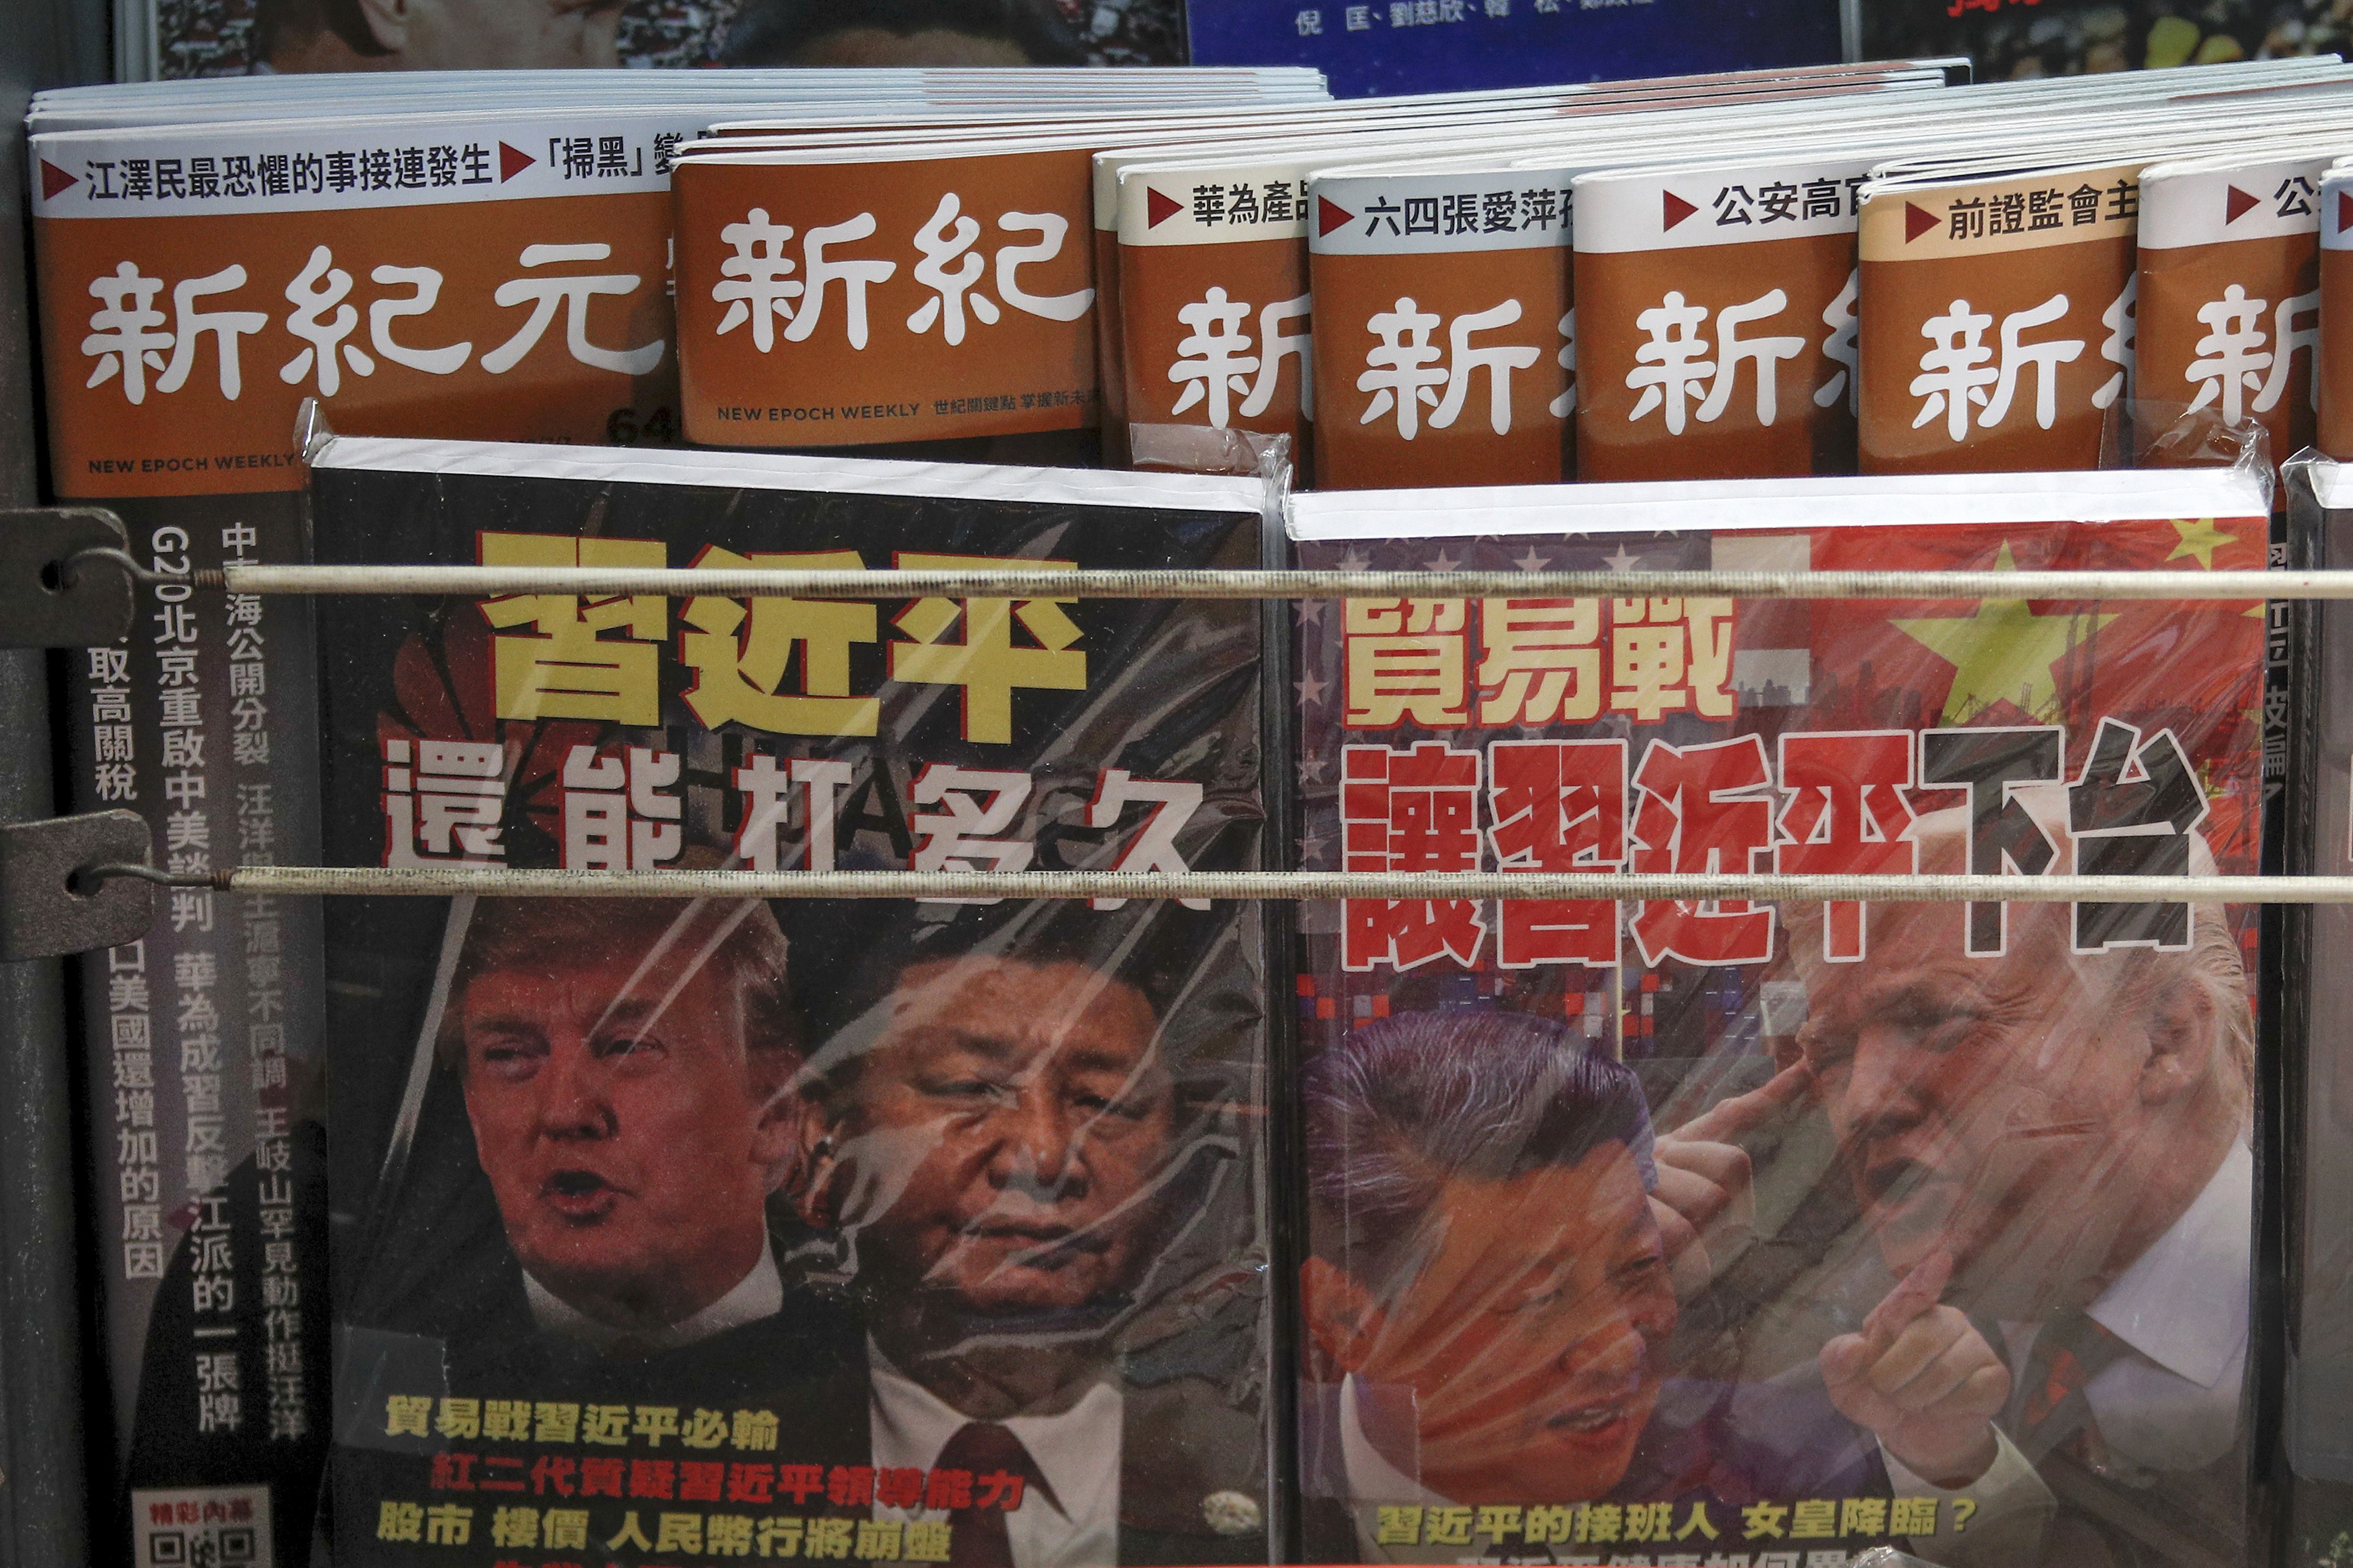 Hong Kong cuts taxes to shore up economy amid protests